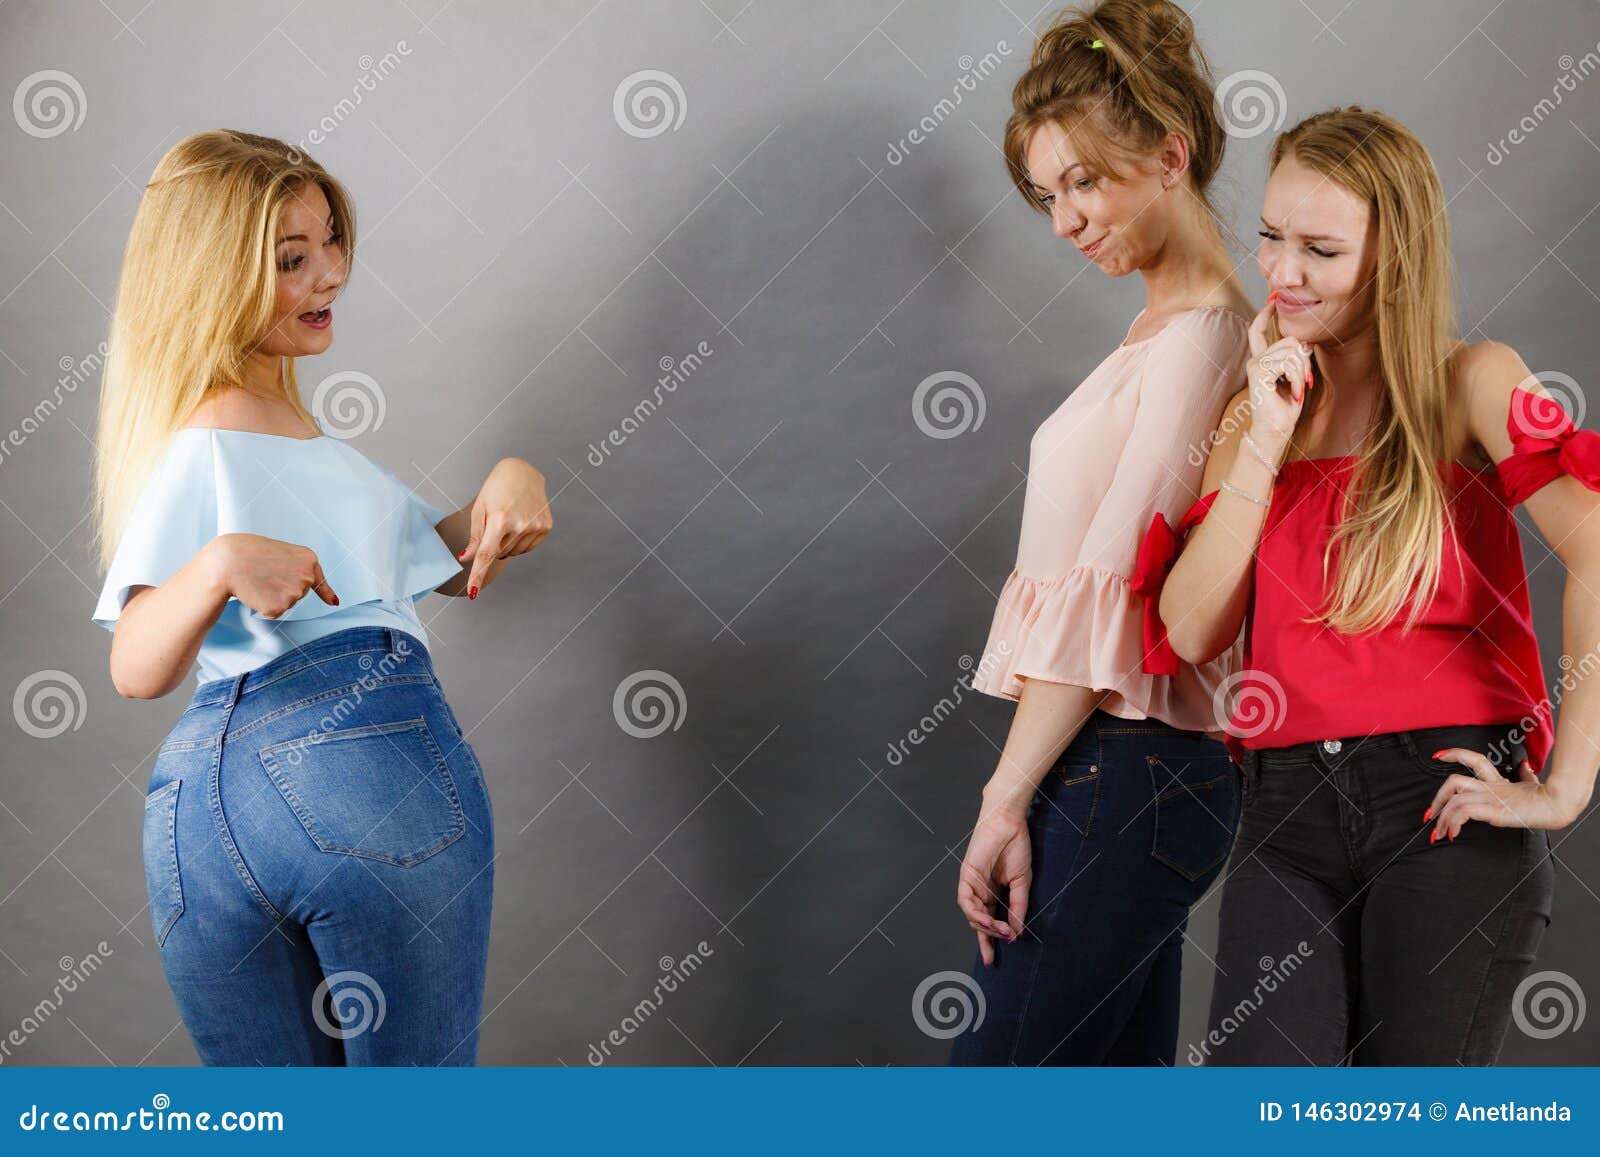 Teen shows ass